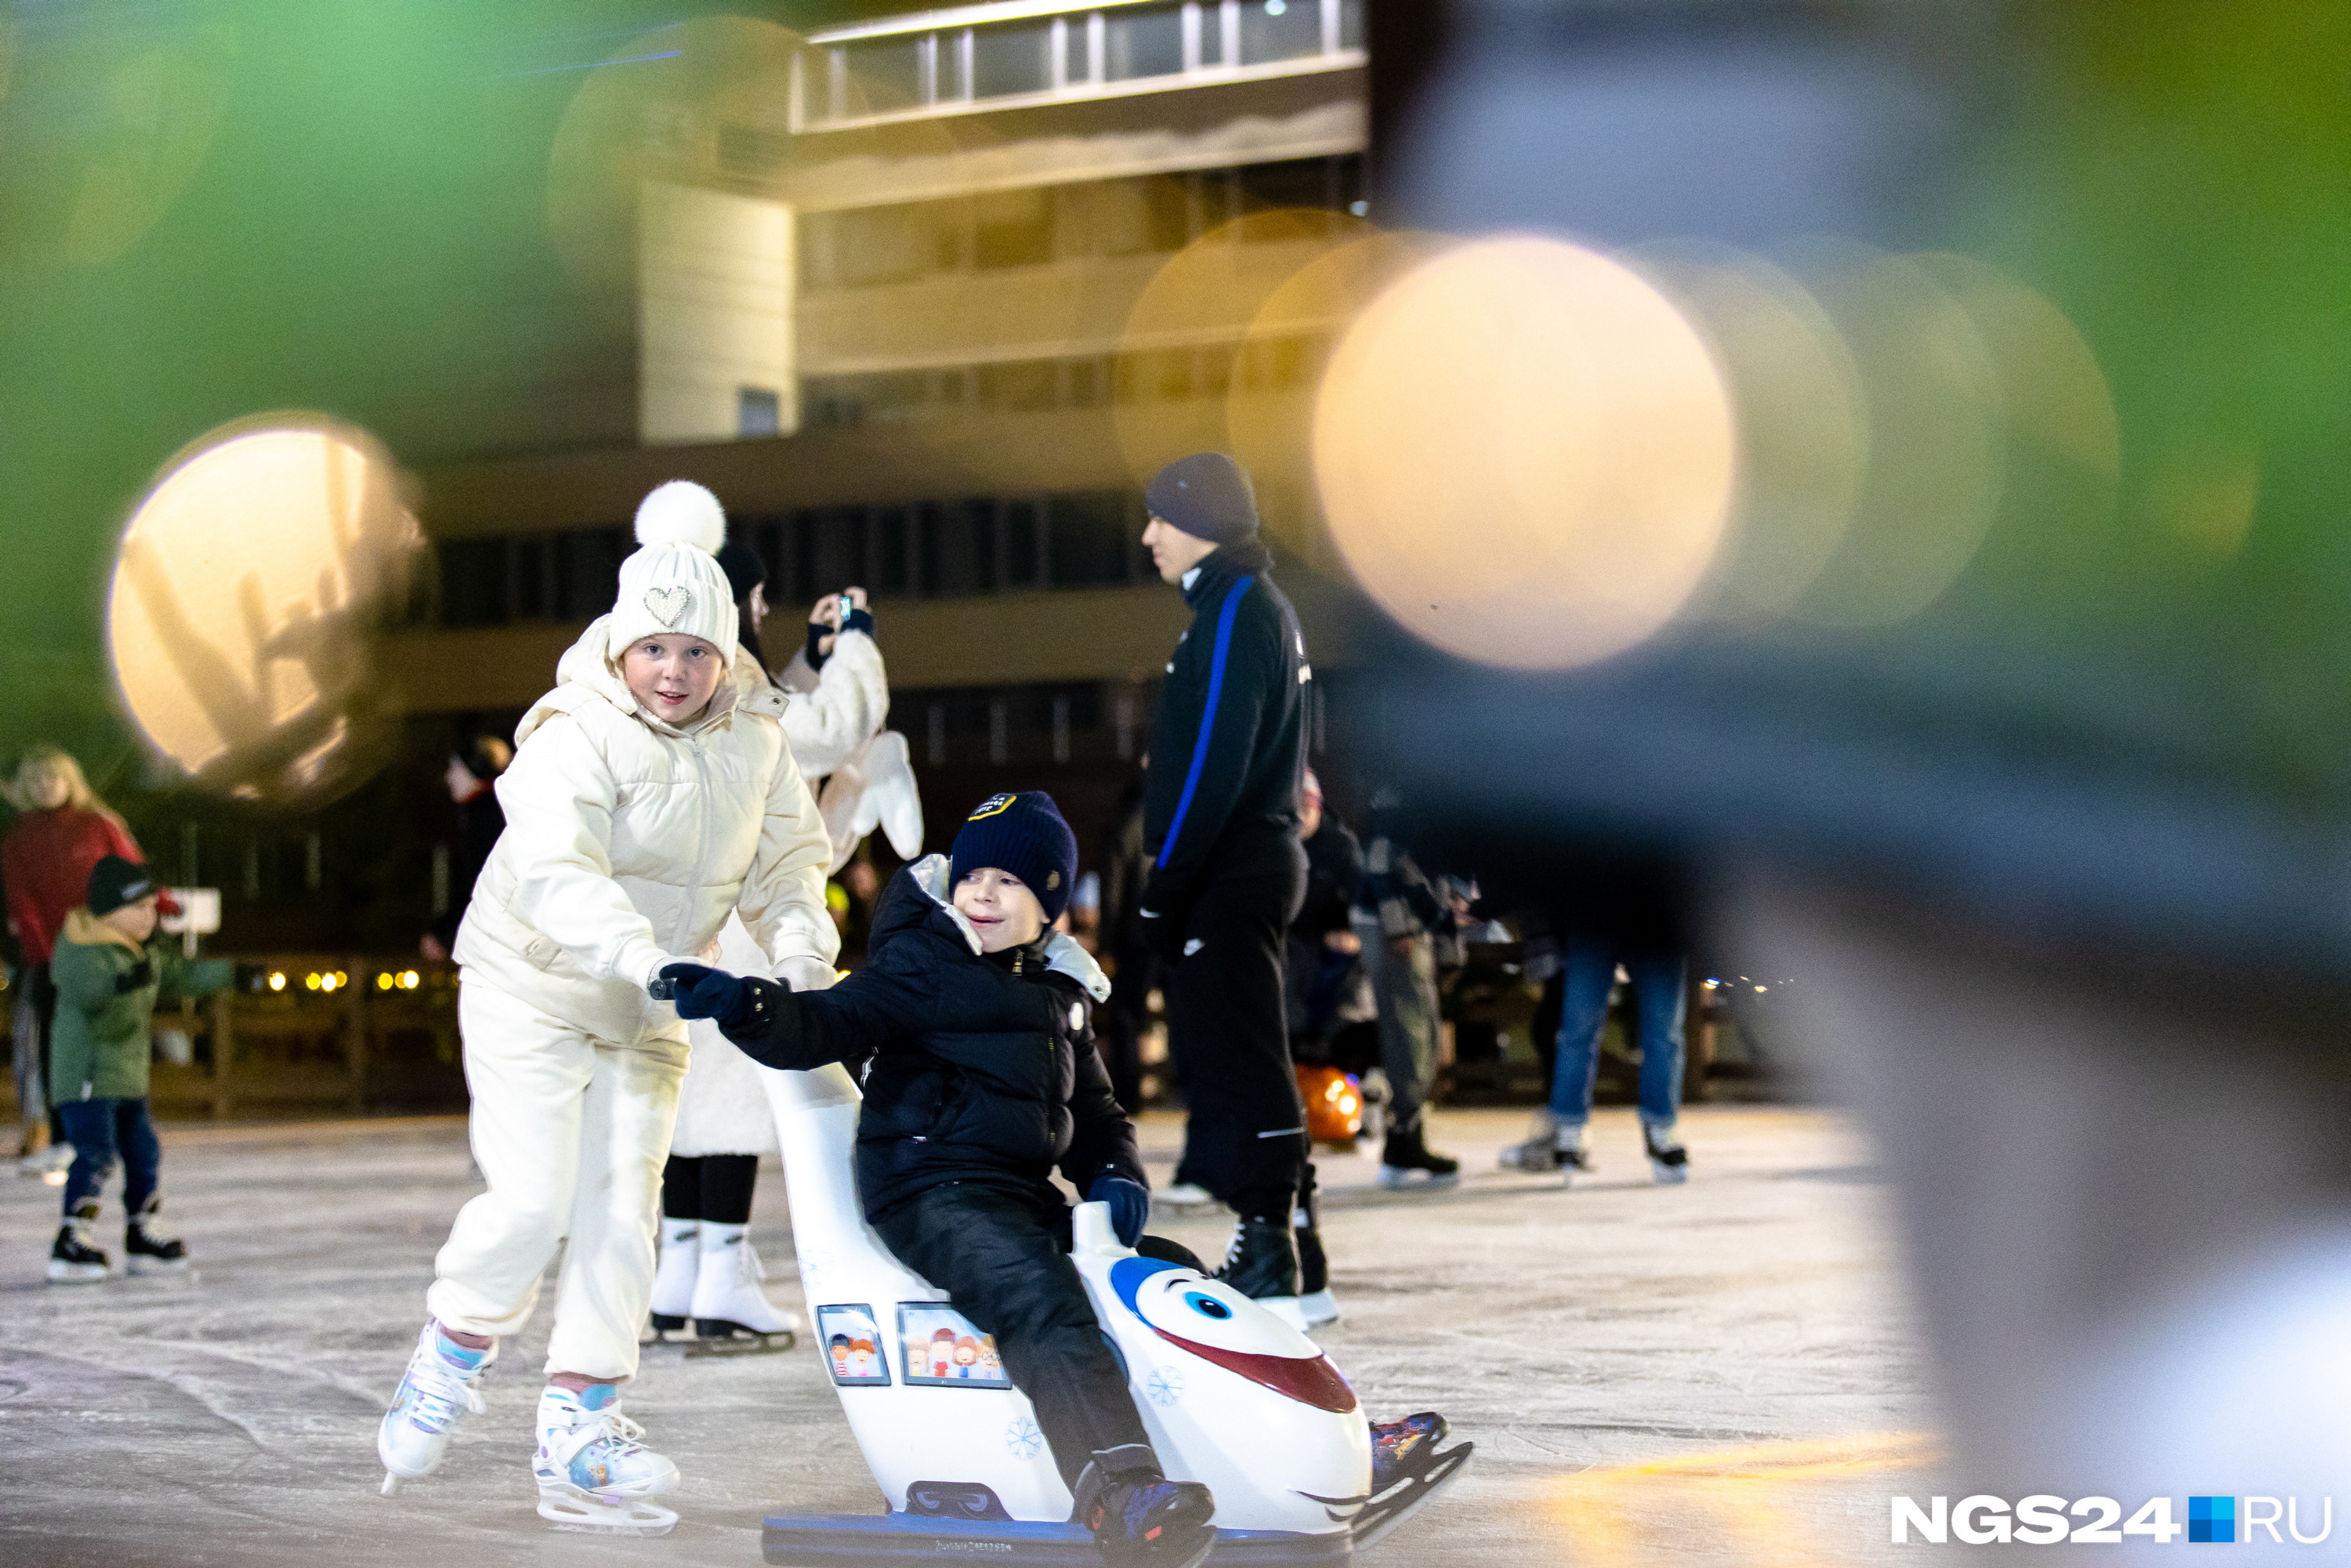 На площади есть ассистенты фигуриста, которые помогают начинающим любителям льда передвигаться без падений